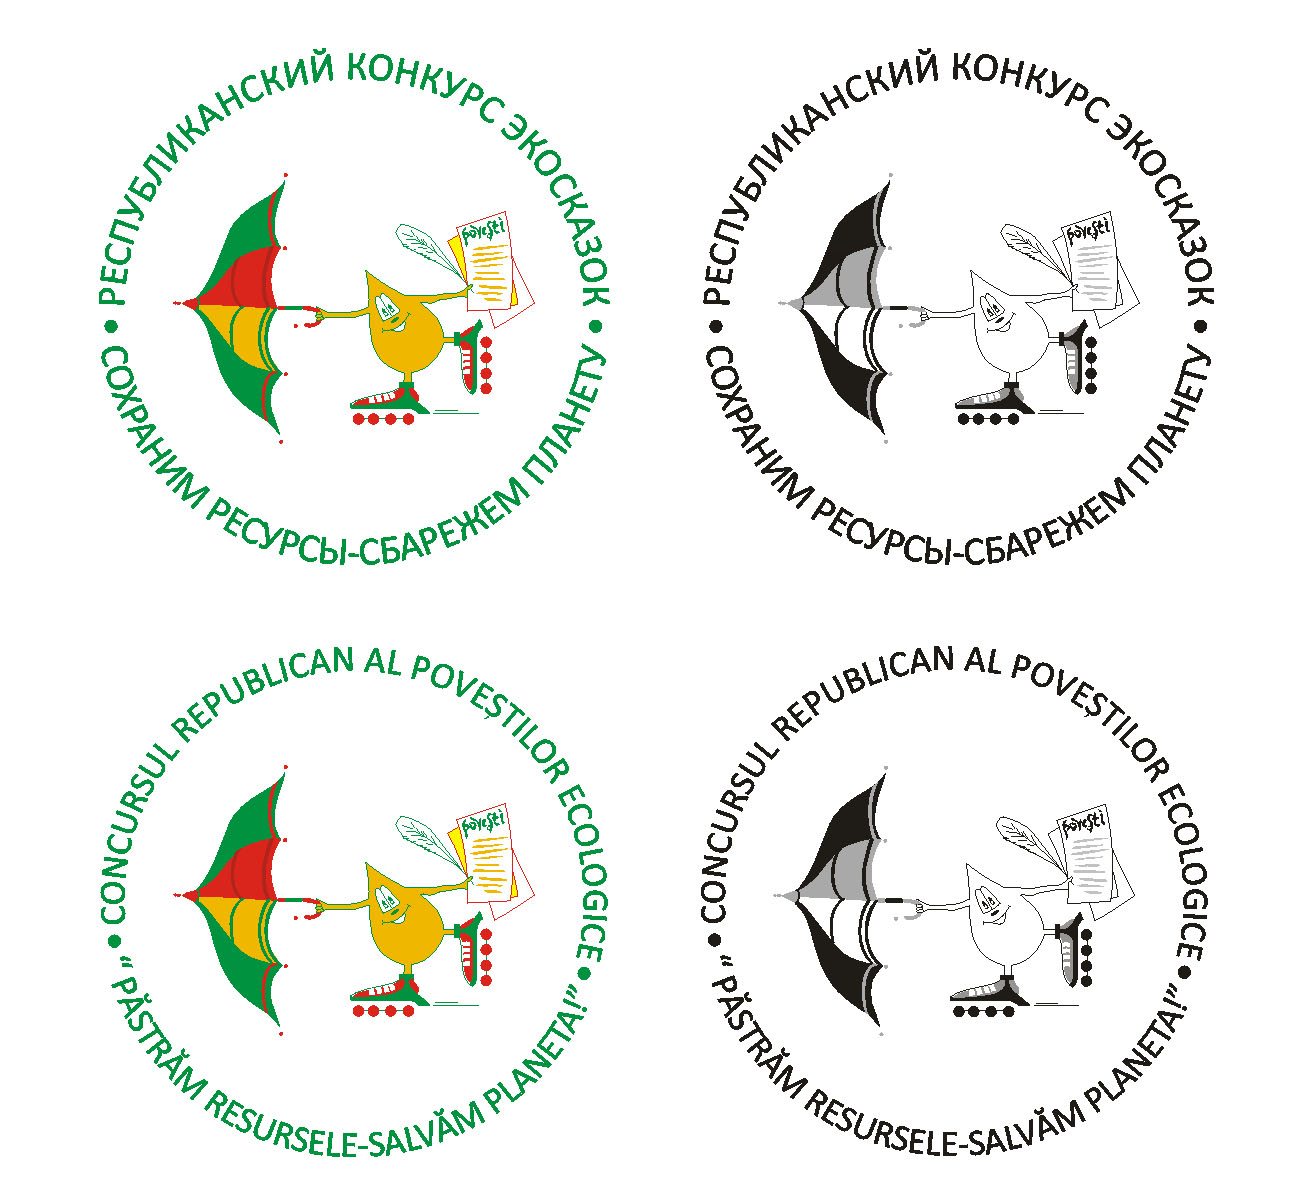 эмблема молдавского экологического клуба на конкурс сказок